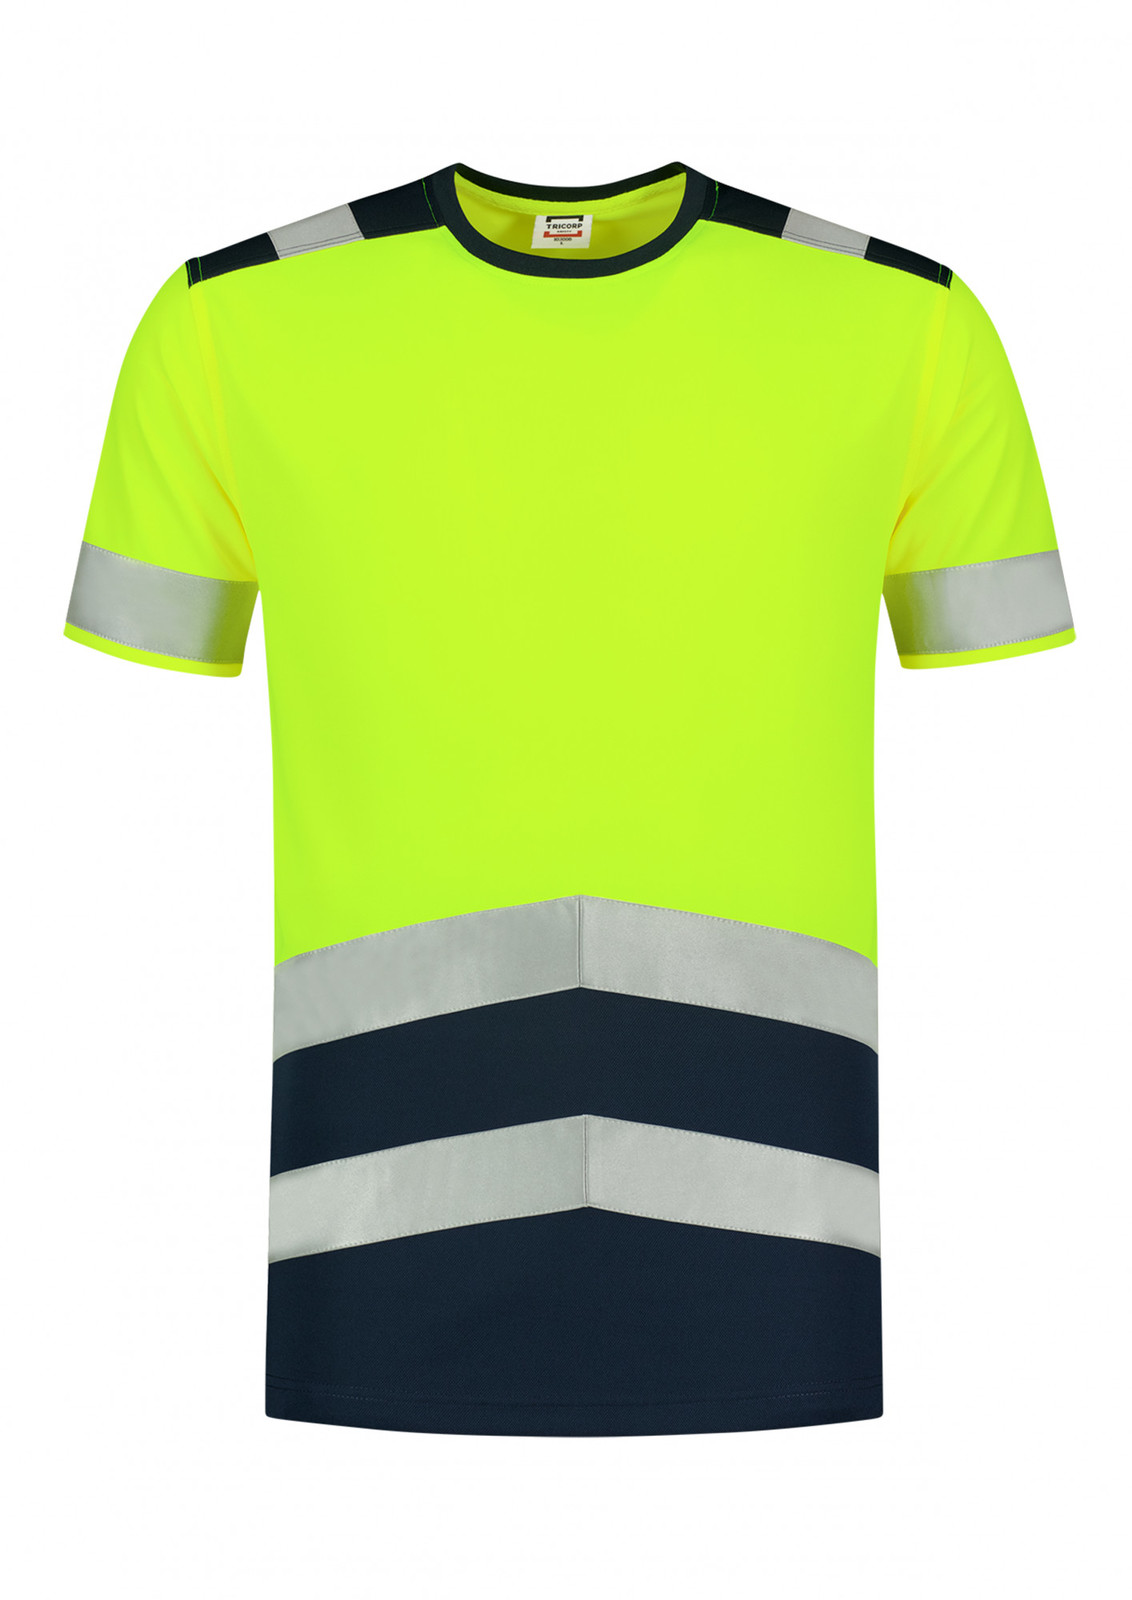 Unisex reflexné tričko Tricorp High Vis Bicolor T01 - veľkosť: M, farba: fluorescenčno žltá